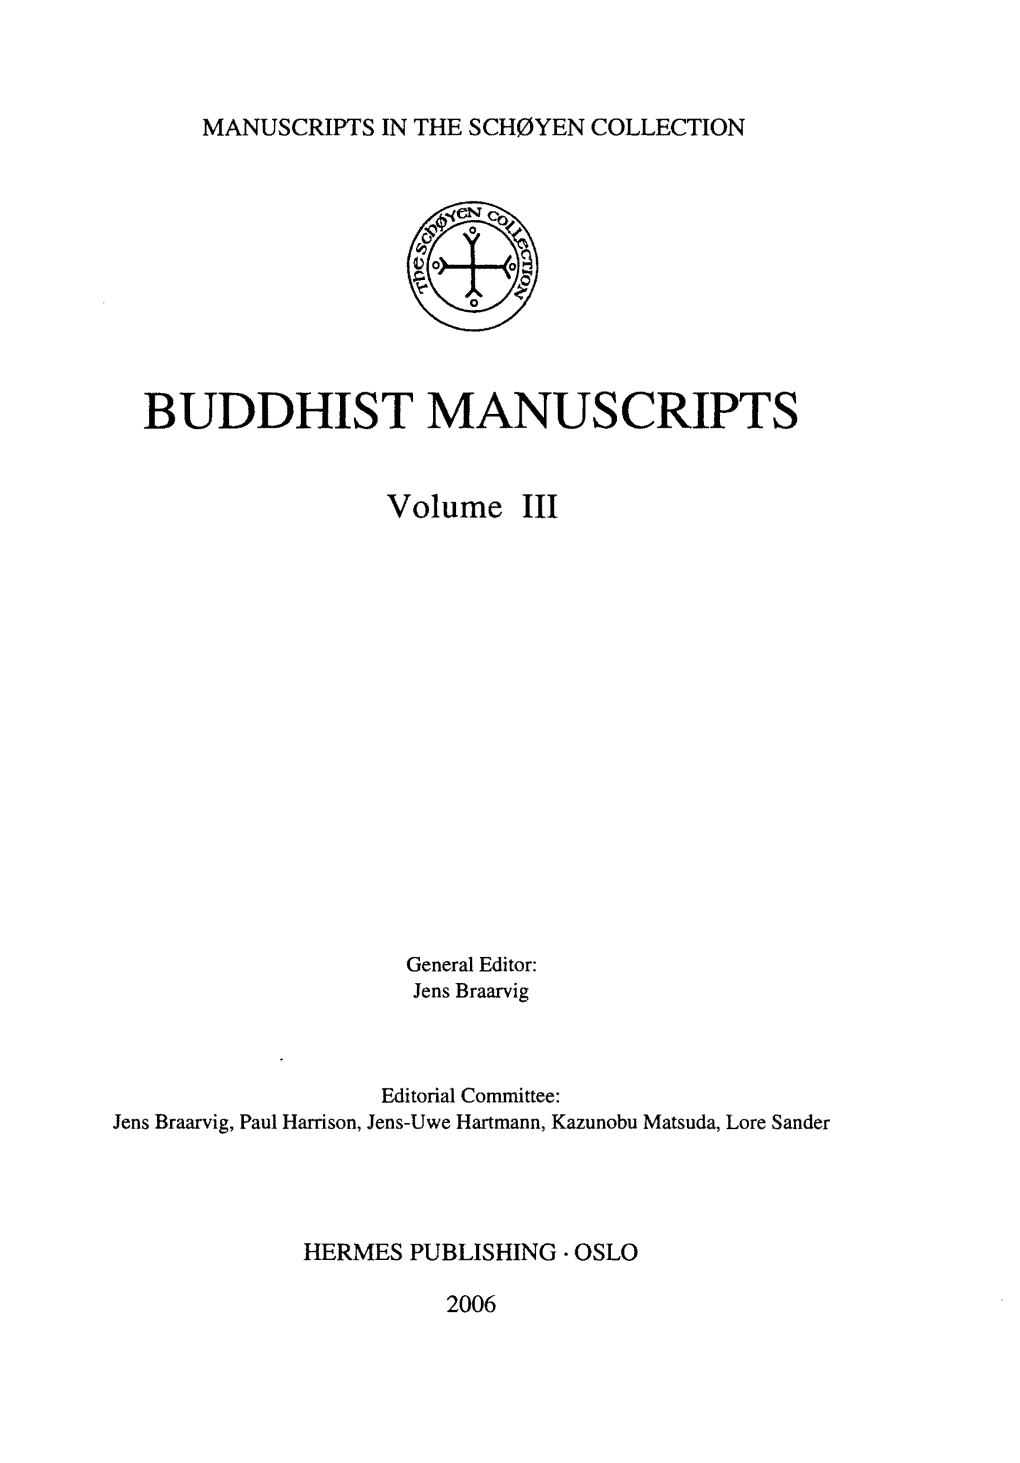 Buddhist Manuscripts